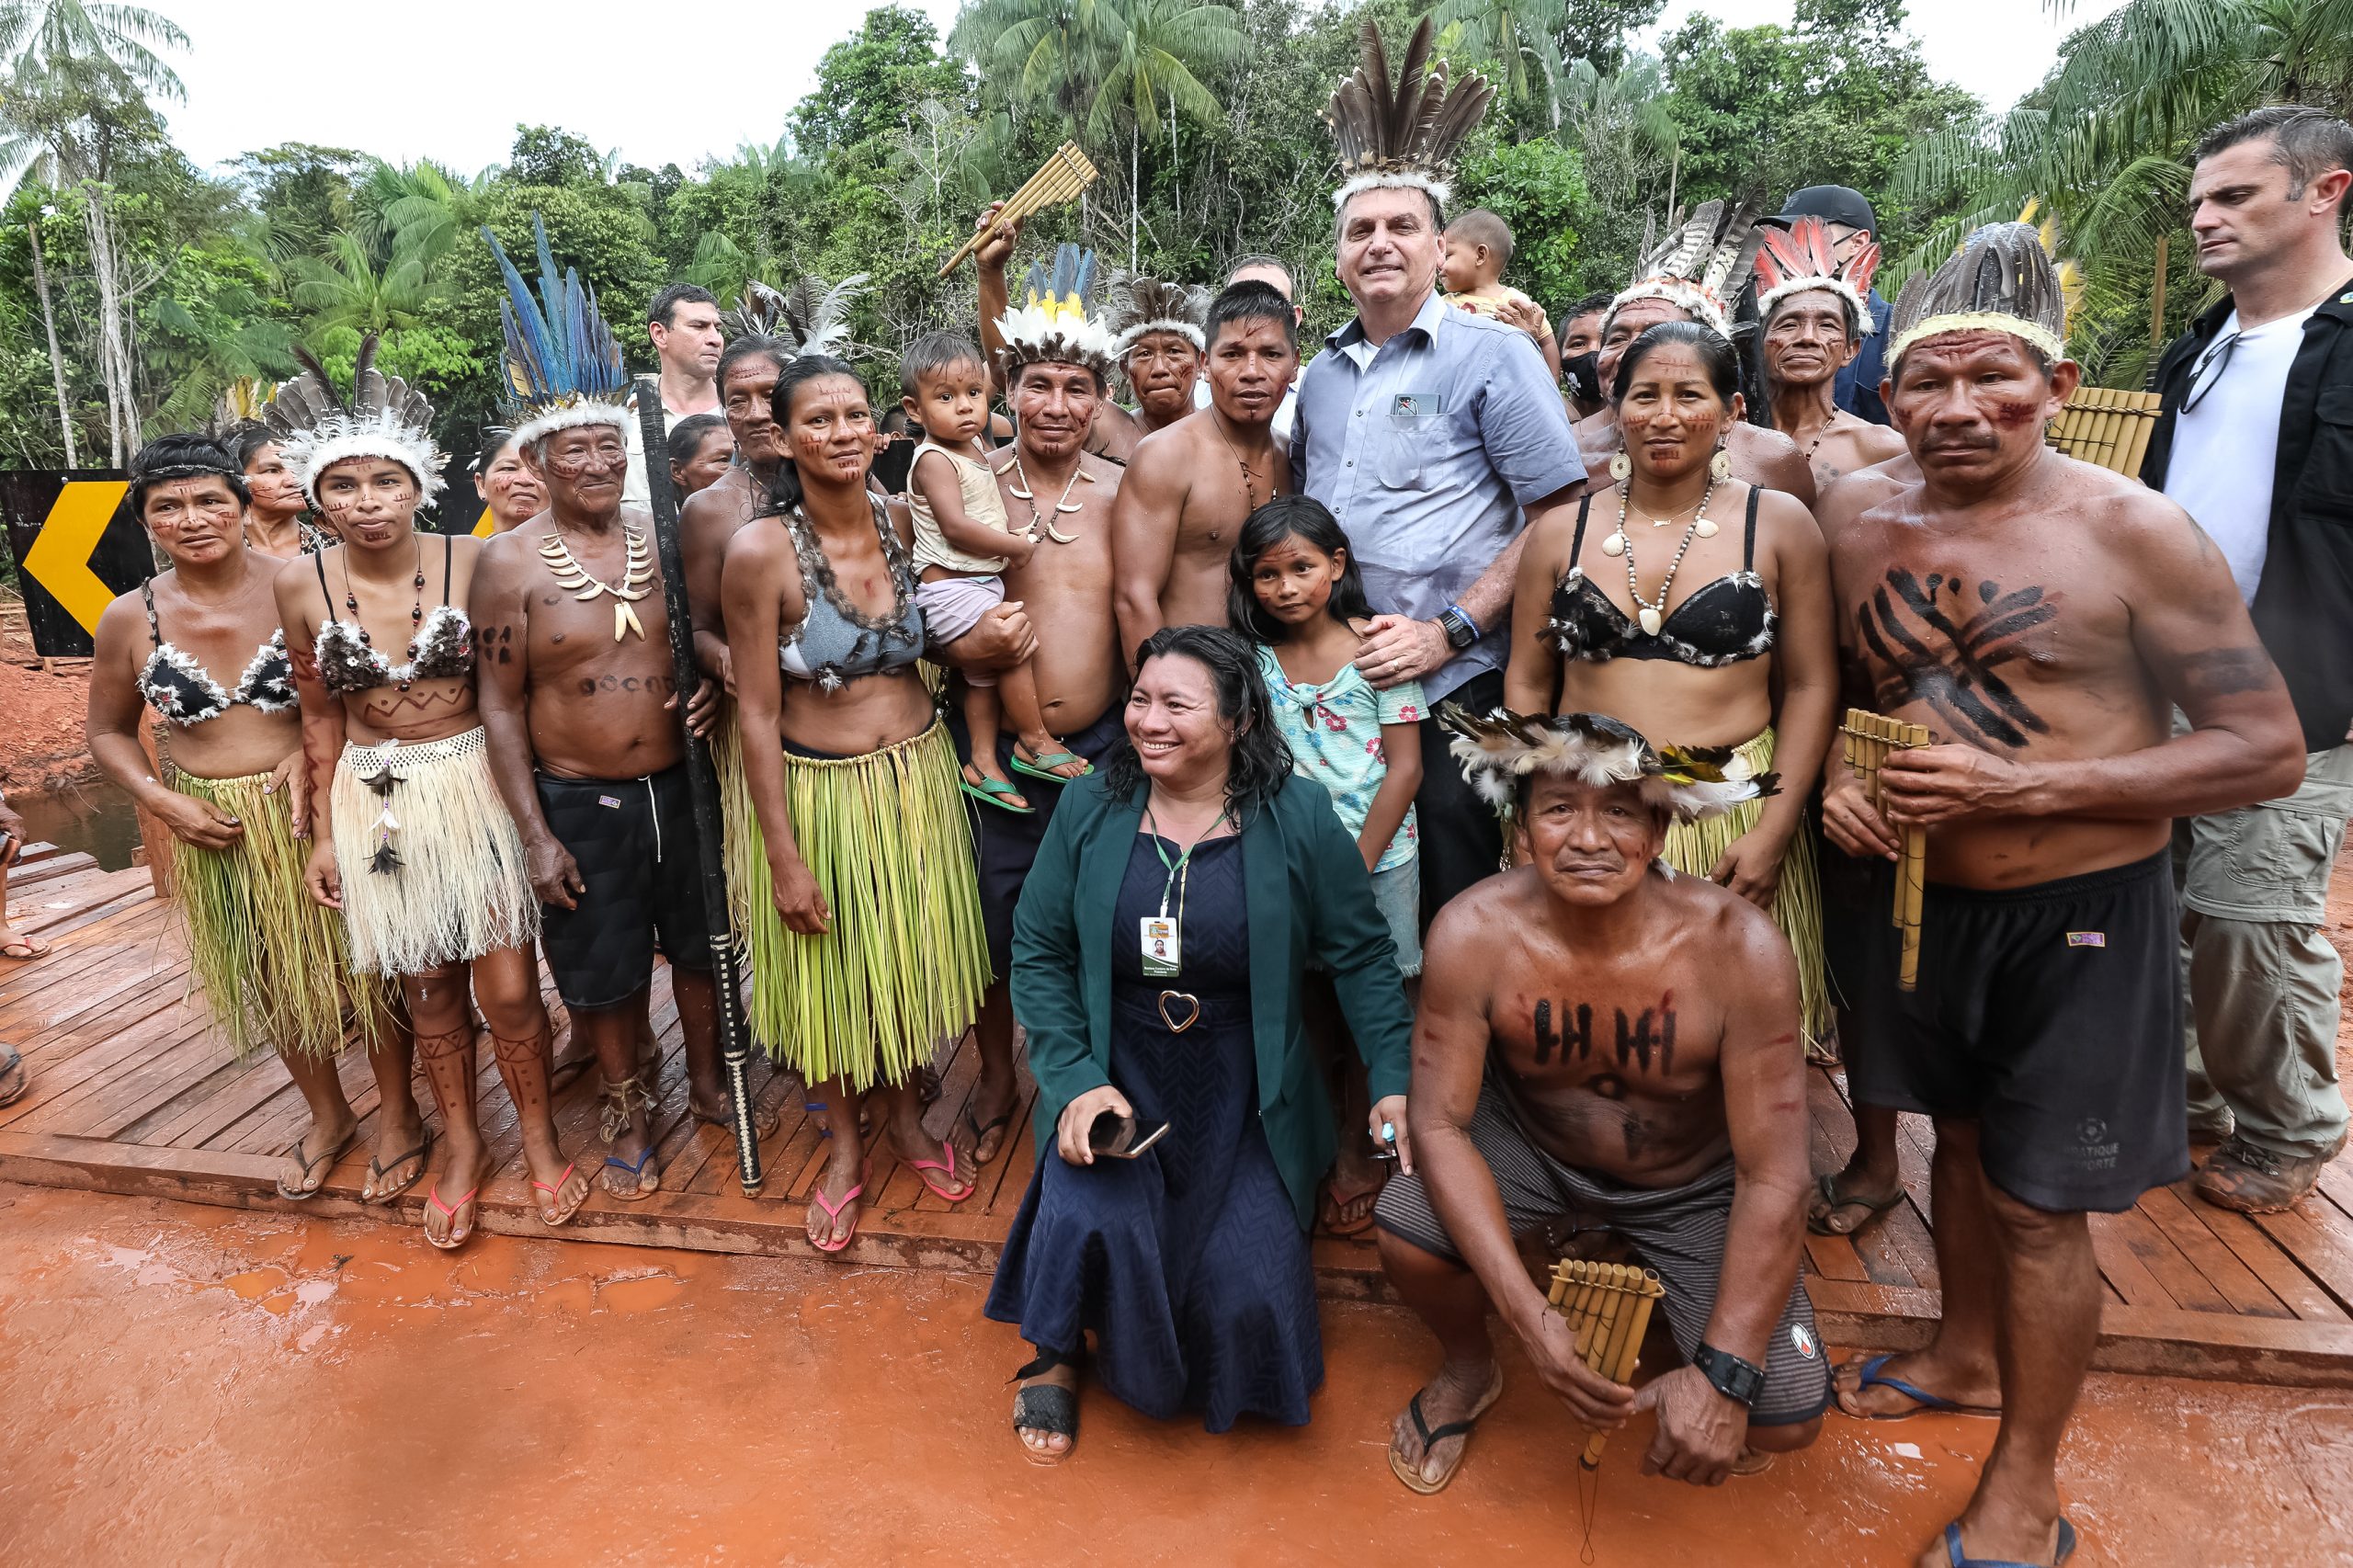 Sob clima de festa, indígenas recebem Bolsonaro com euforia e muitas fotos 14